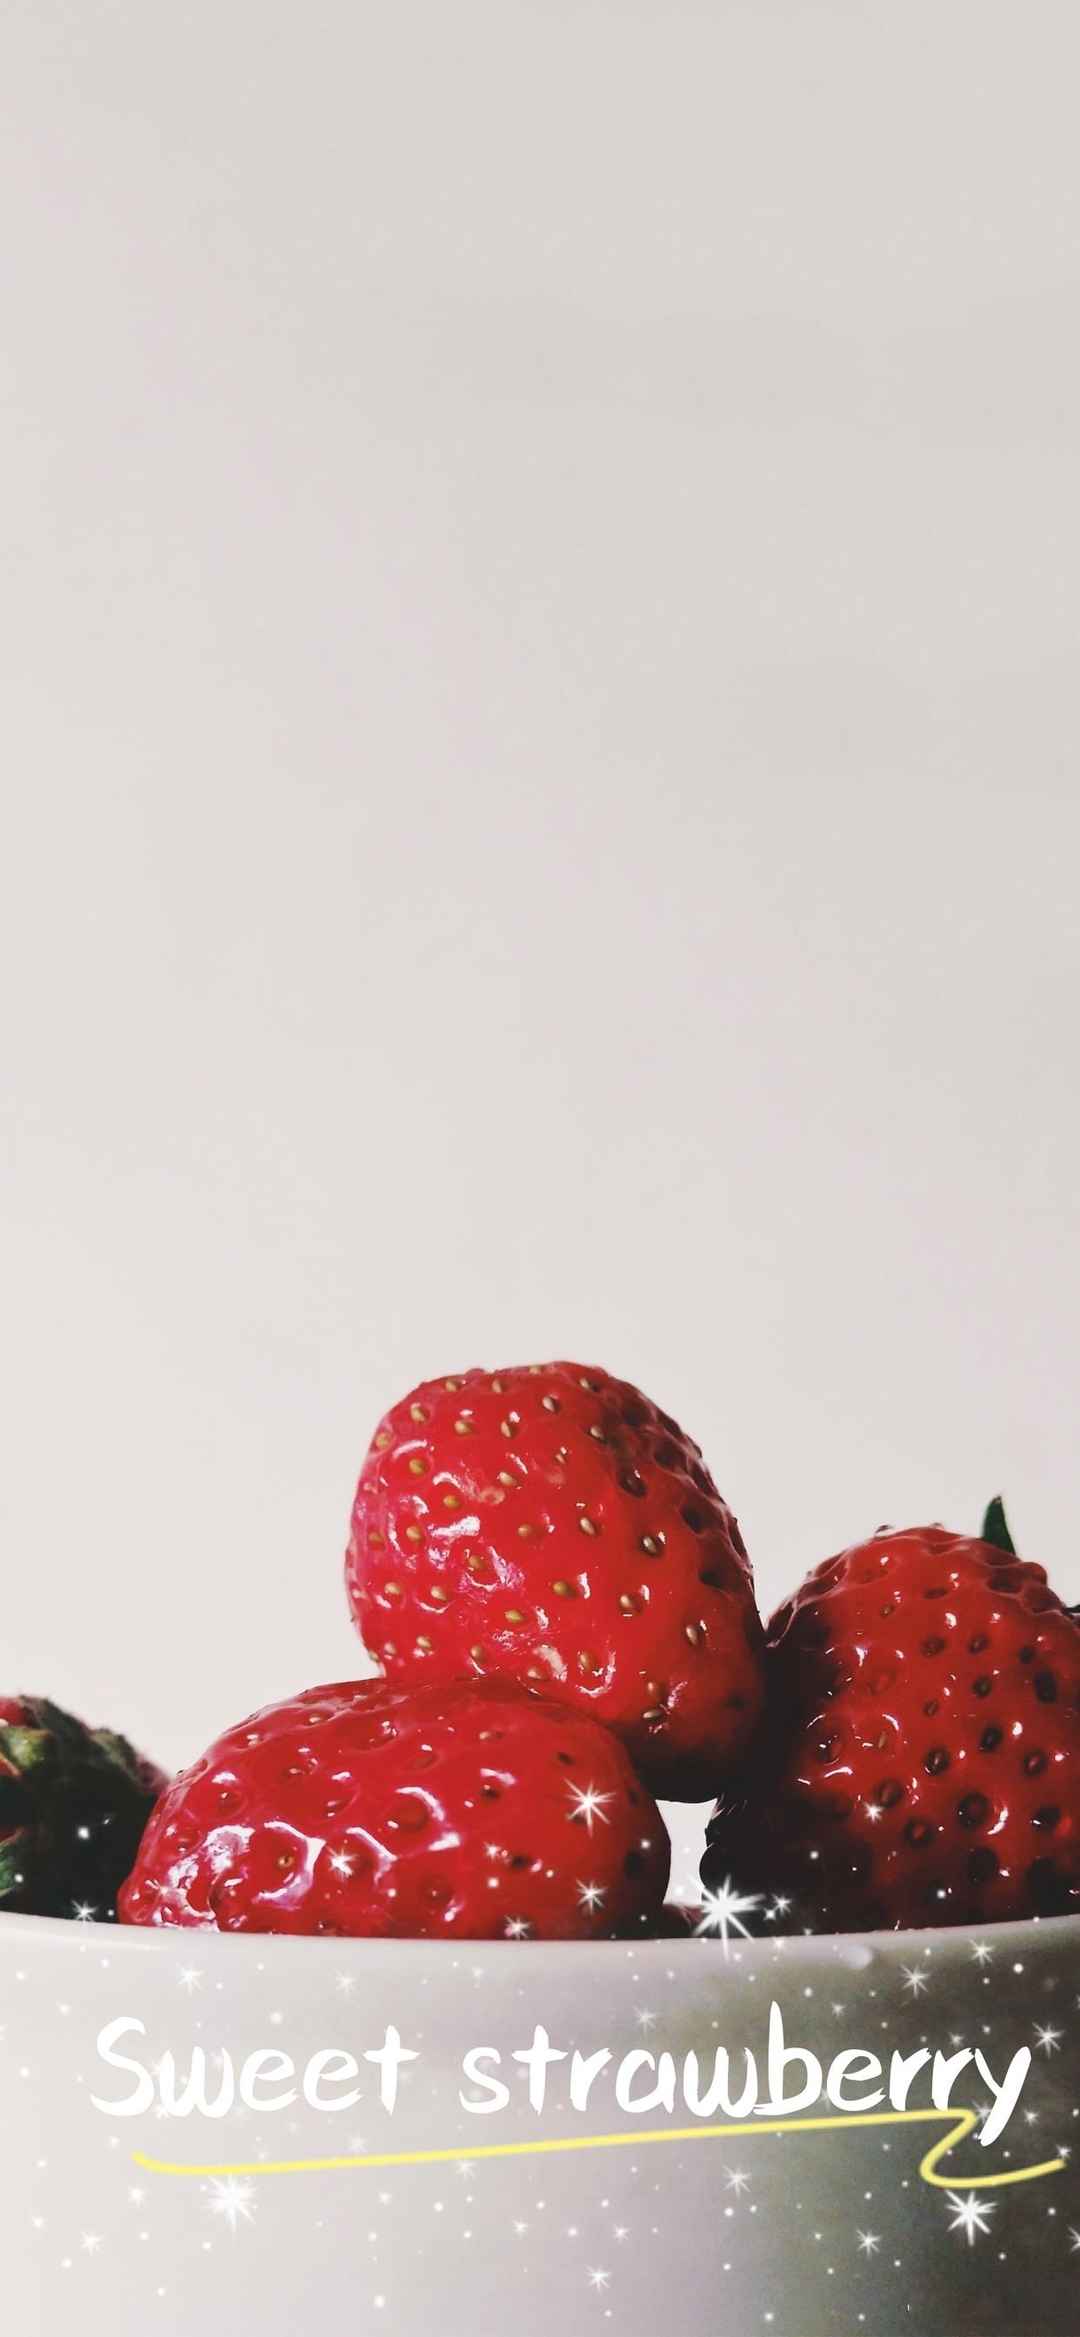 新鲜果蔬草莓美食诱惑高清手机壁纸